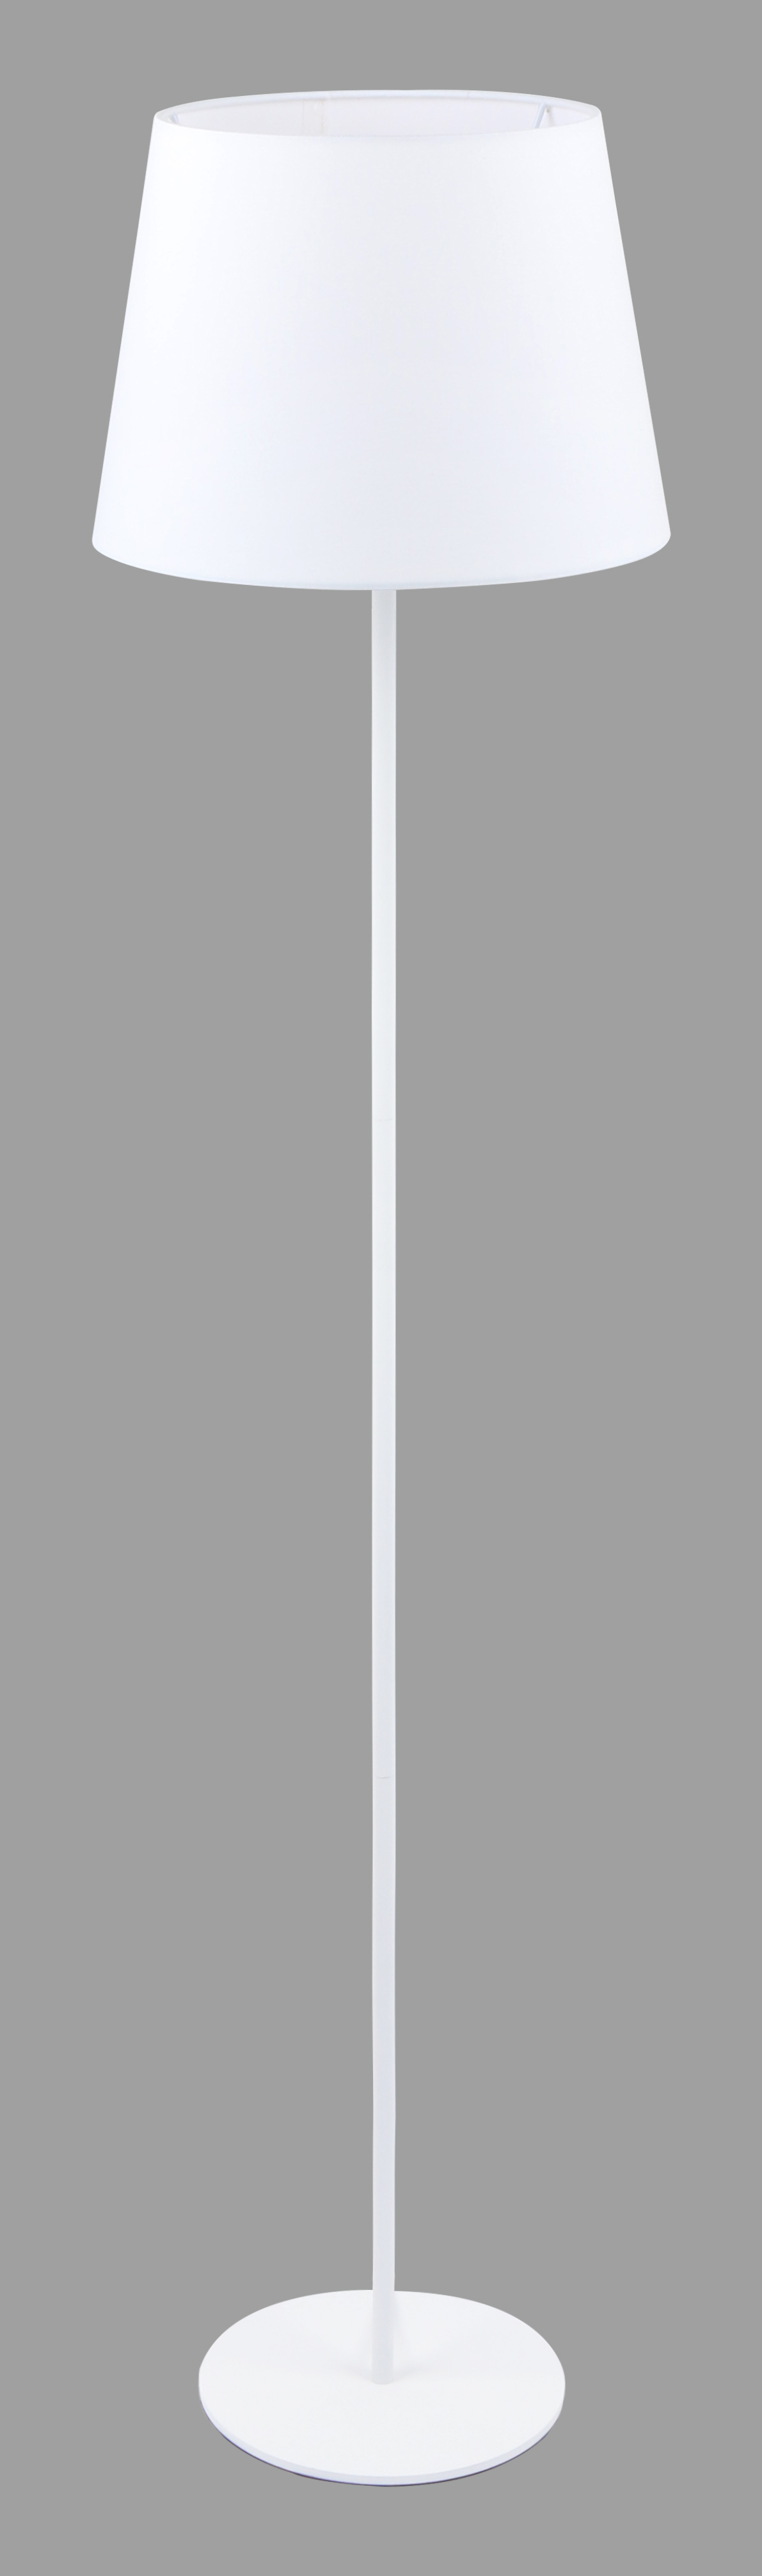 Торшер 4002AFL SAND White+White NW (Изображение 1)